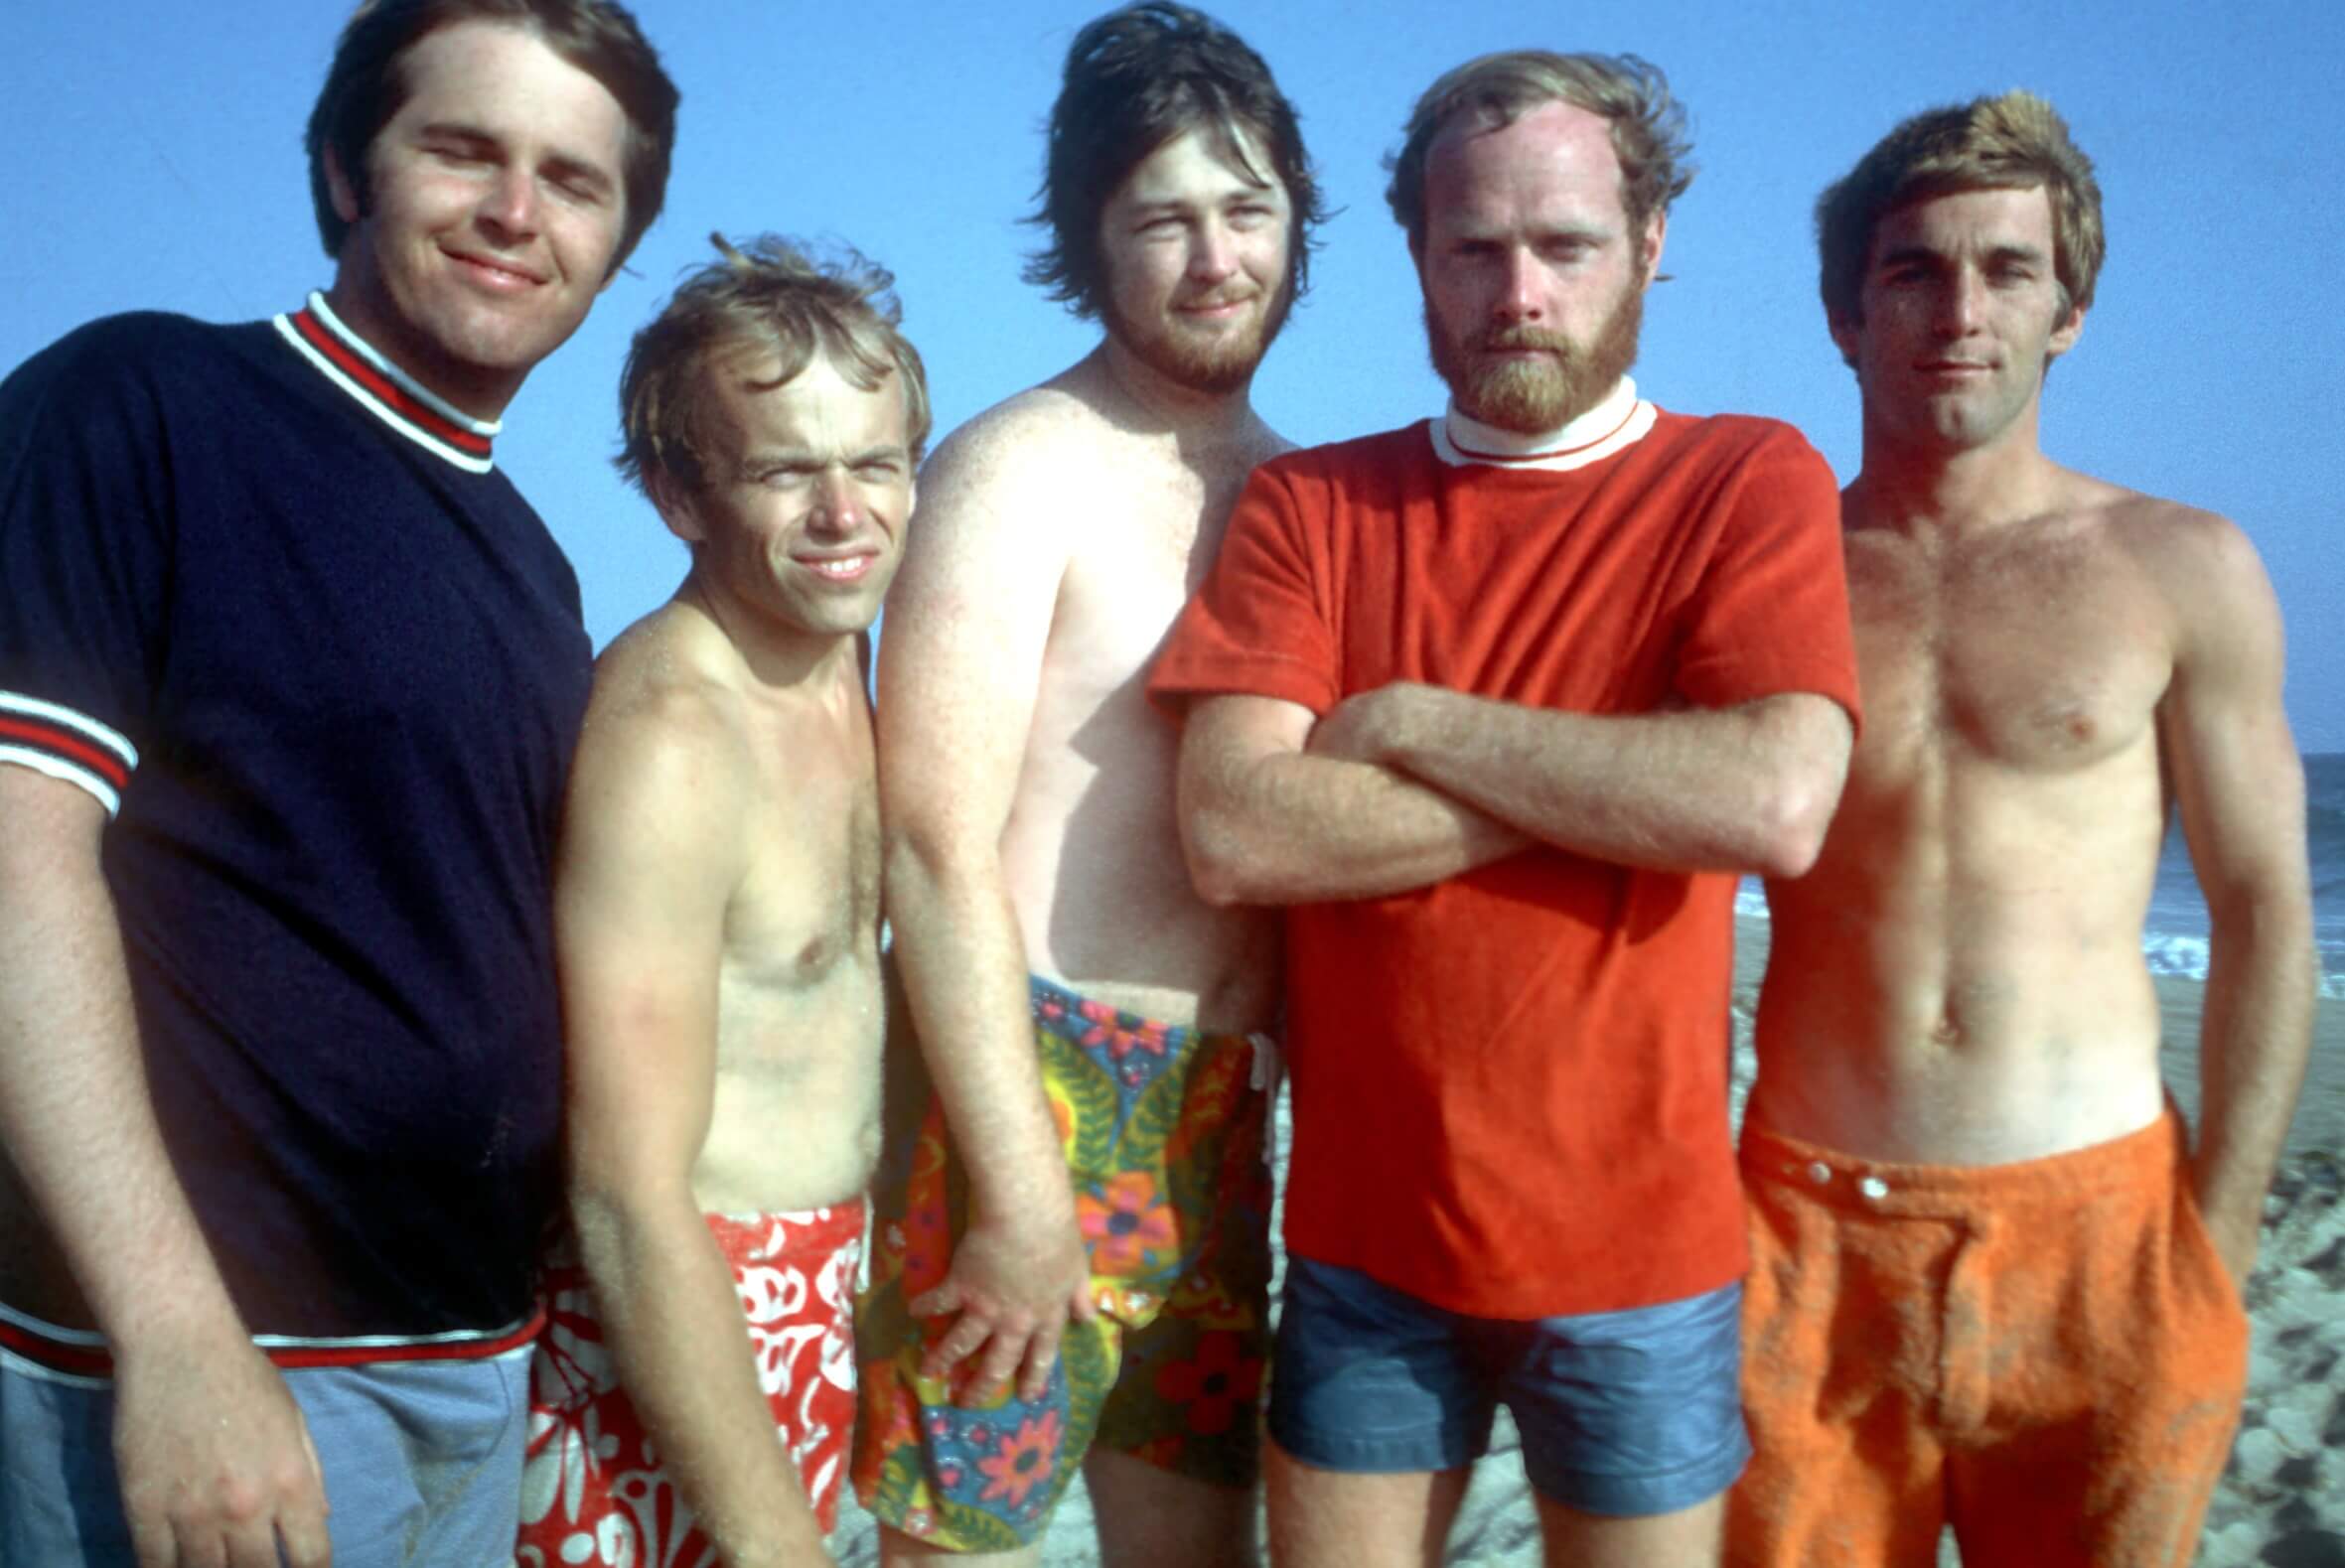 The Beach Boys on the beach